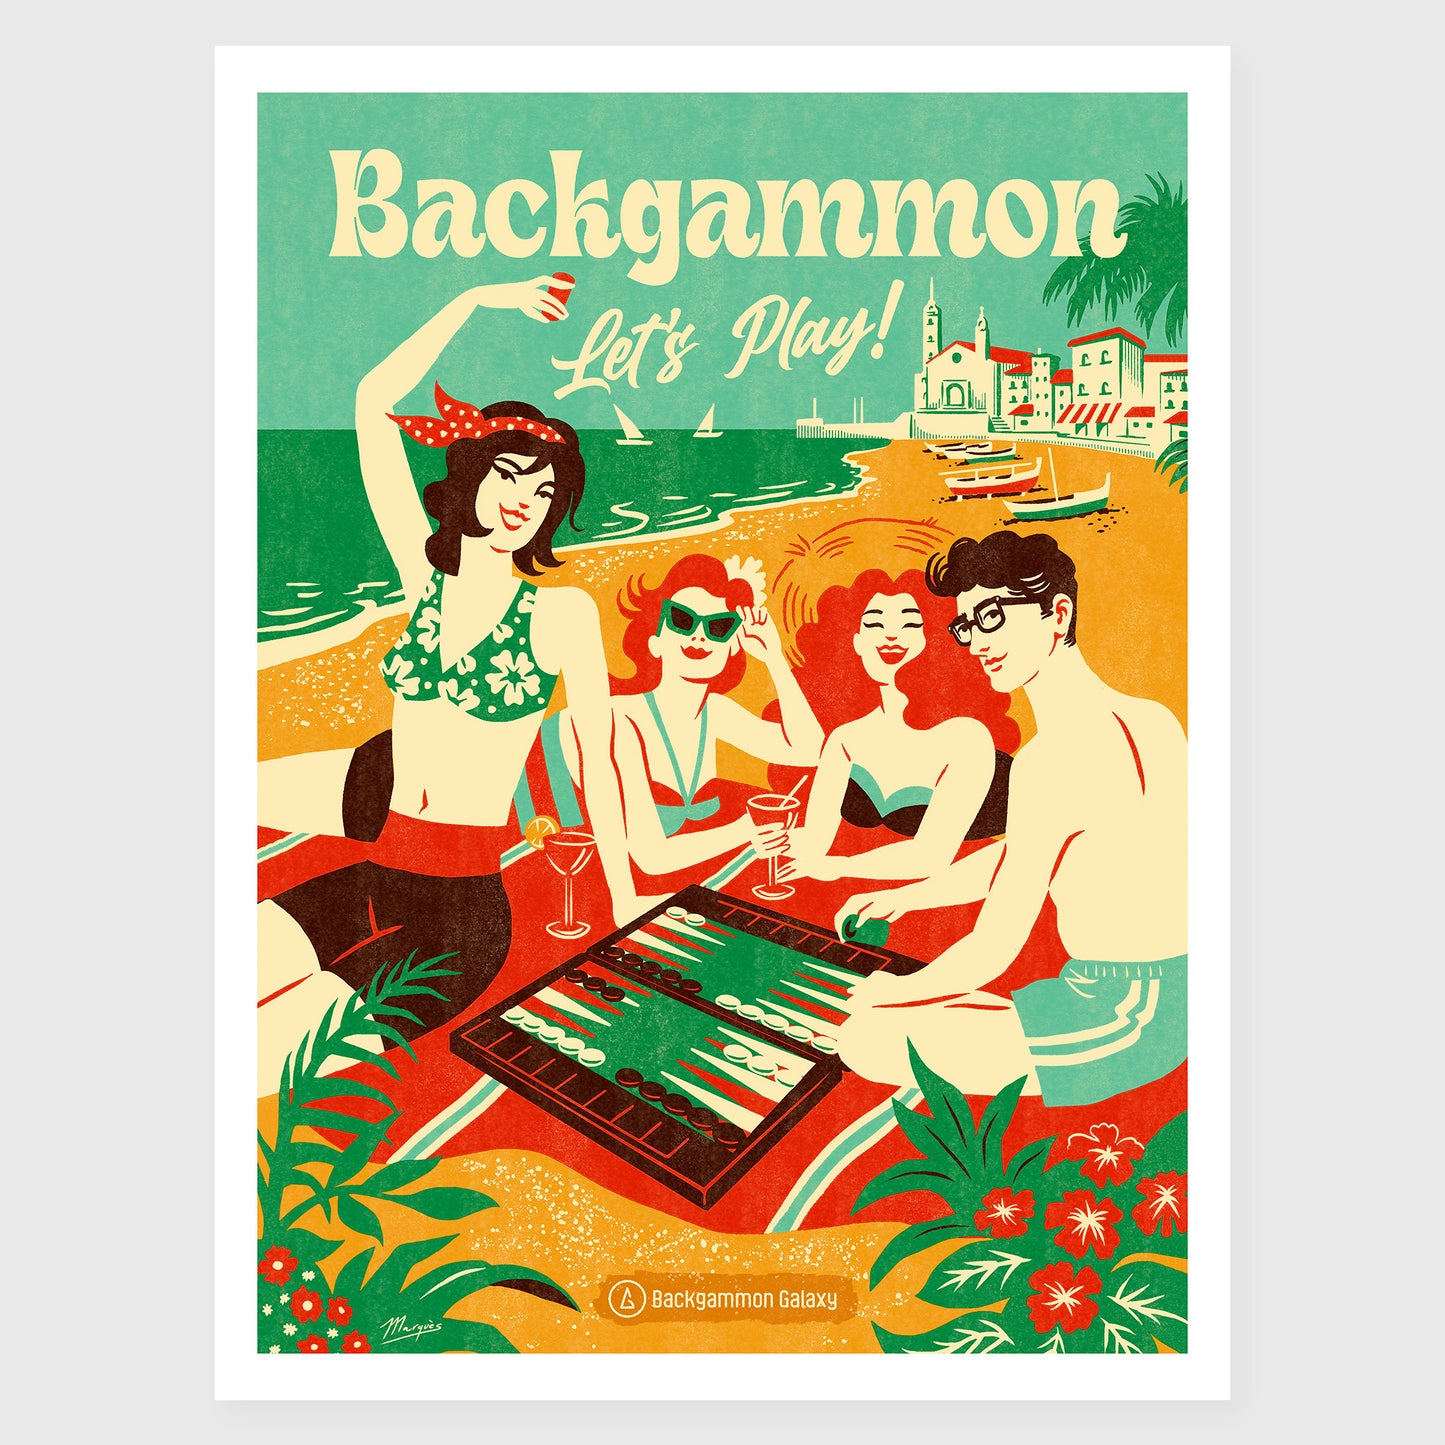 Backgammon - Let's Play!, Backgammon-Poster im Vintage-Stil, von der Künstlerin Adria Marques für Backgammon Galaxy